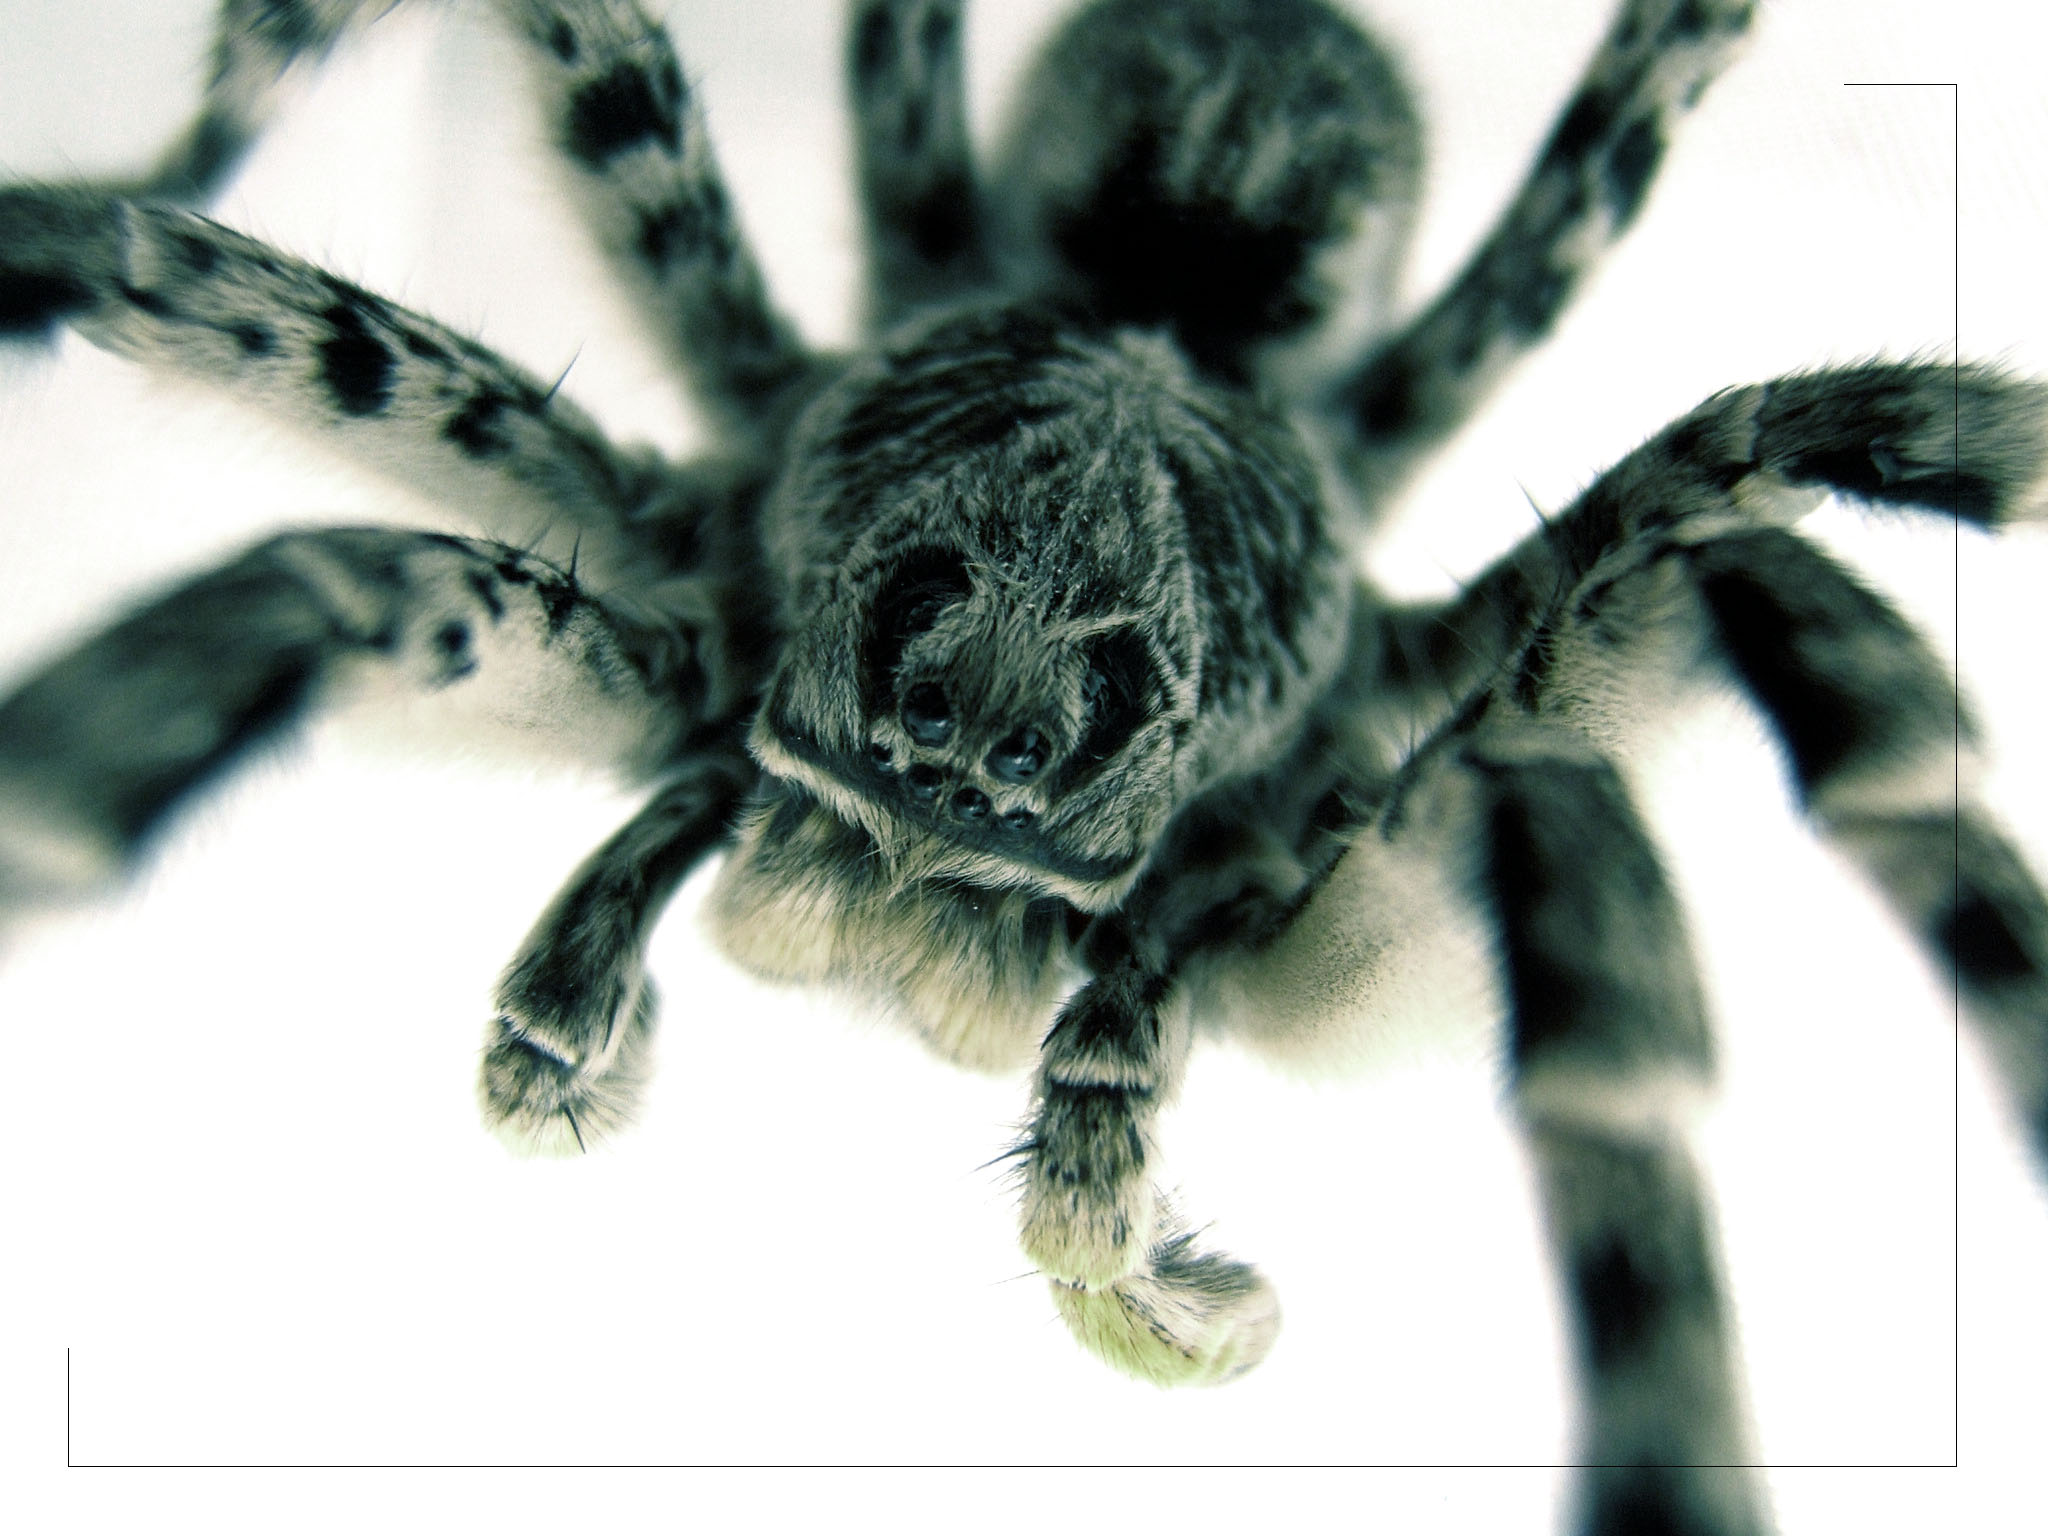 spiders, arachnids - desktop wallpaper